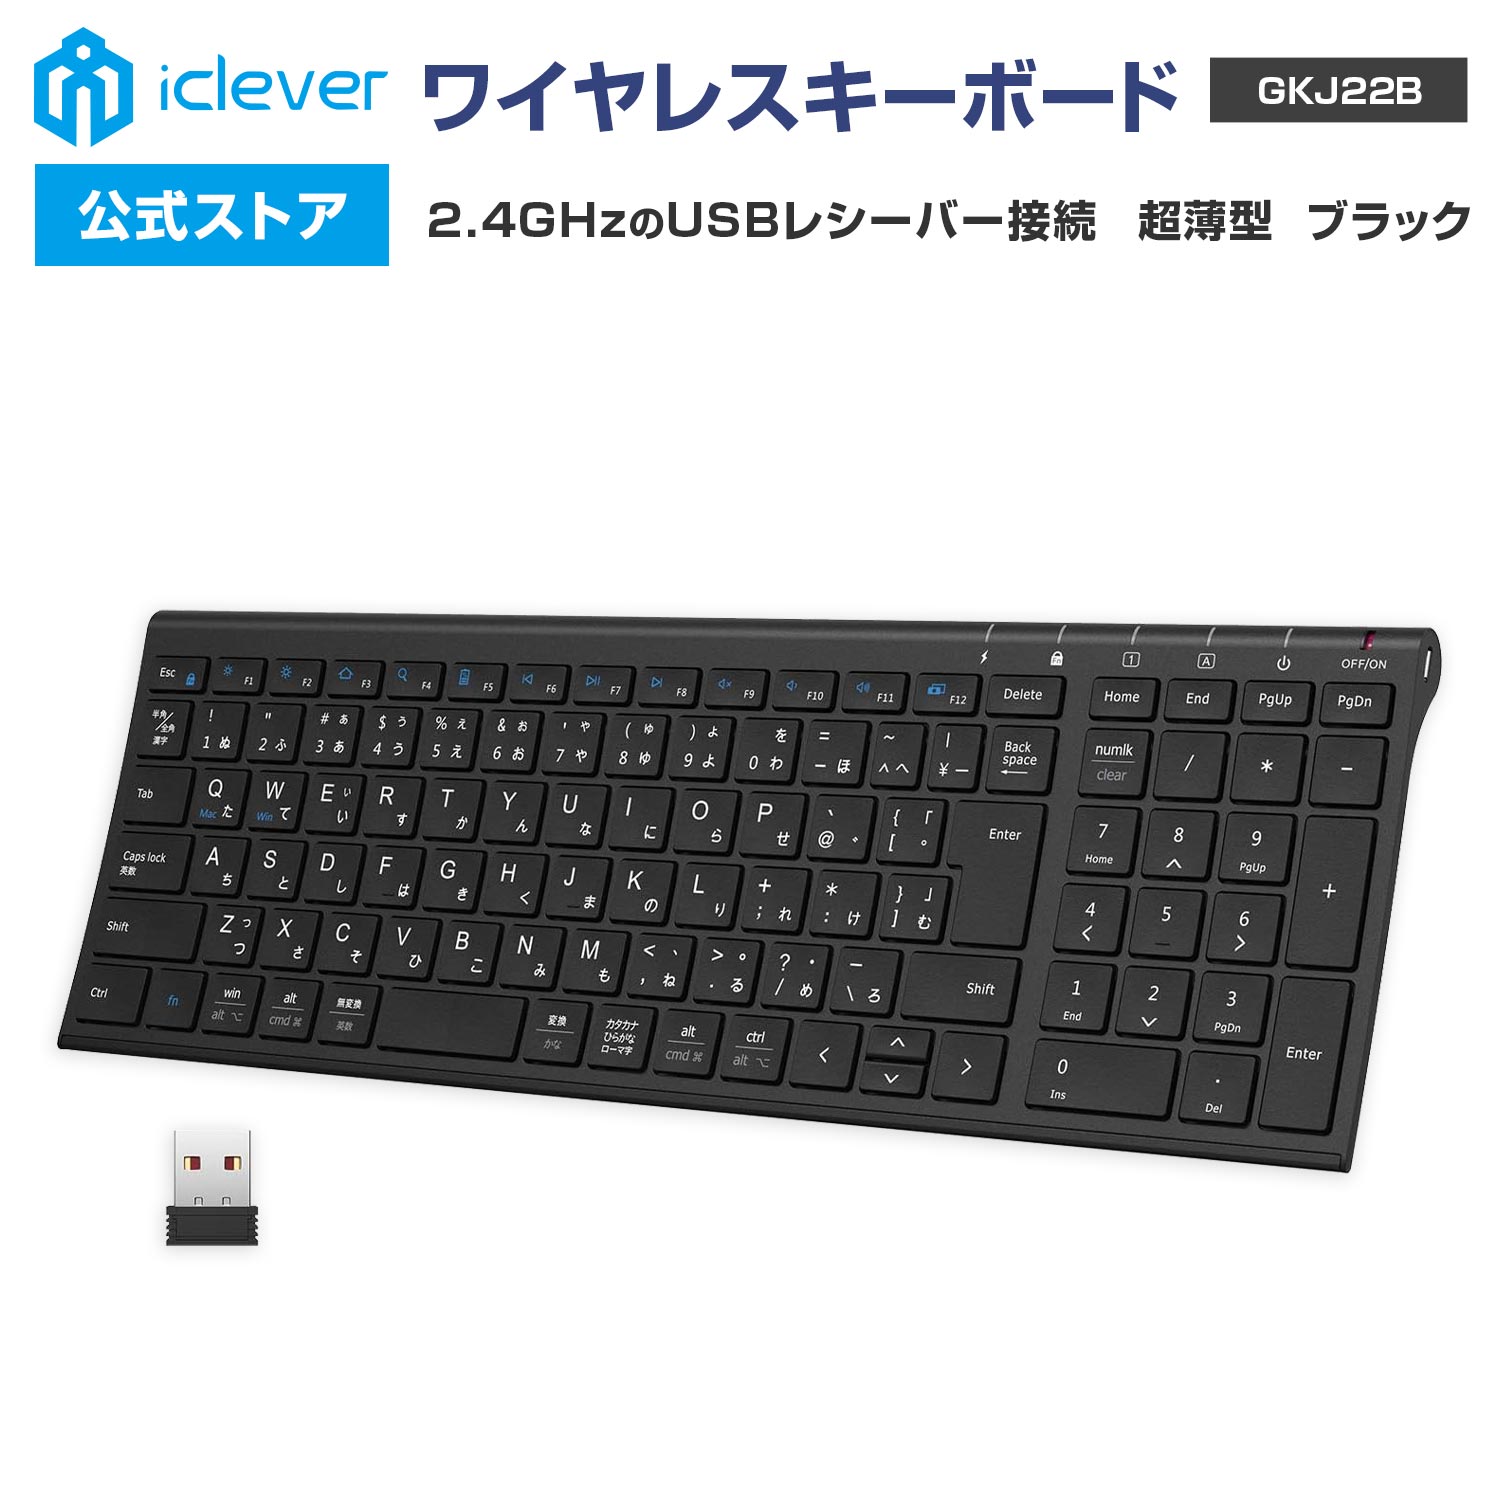 【iClever公式】 ワイヤレスキーボード GKJ22B 人気 話題 2.4GHz接続 USBレシーバー接続 テンキー搭載 日本語配列 超薄型 パンタグラフ式 スタイリッシュ ガジェット コスパ レビューキャンペーン 父の日